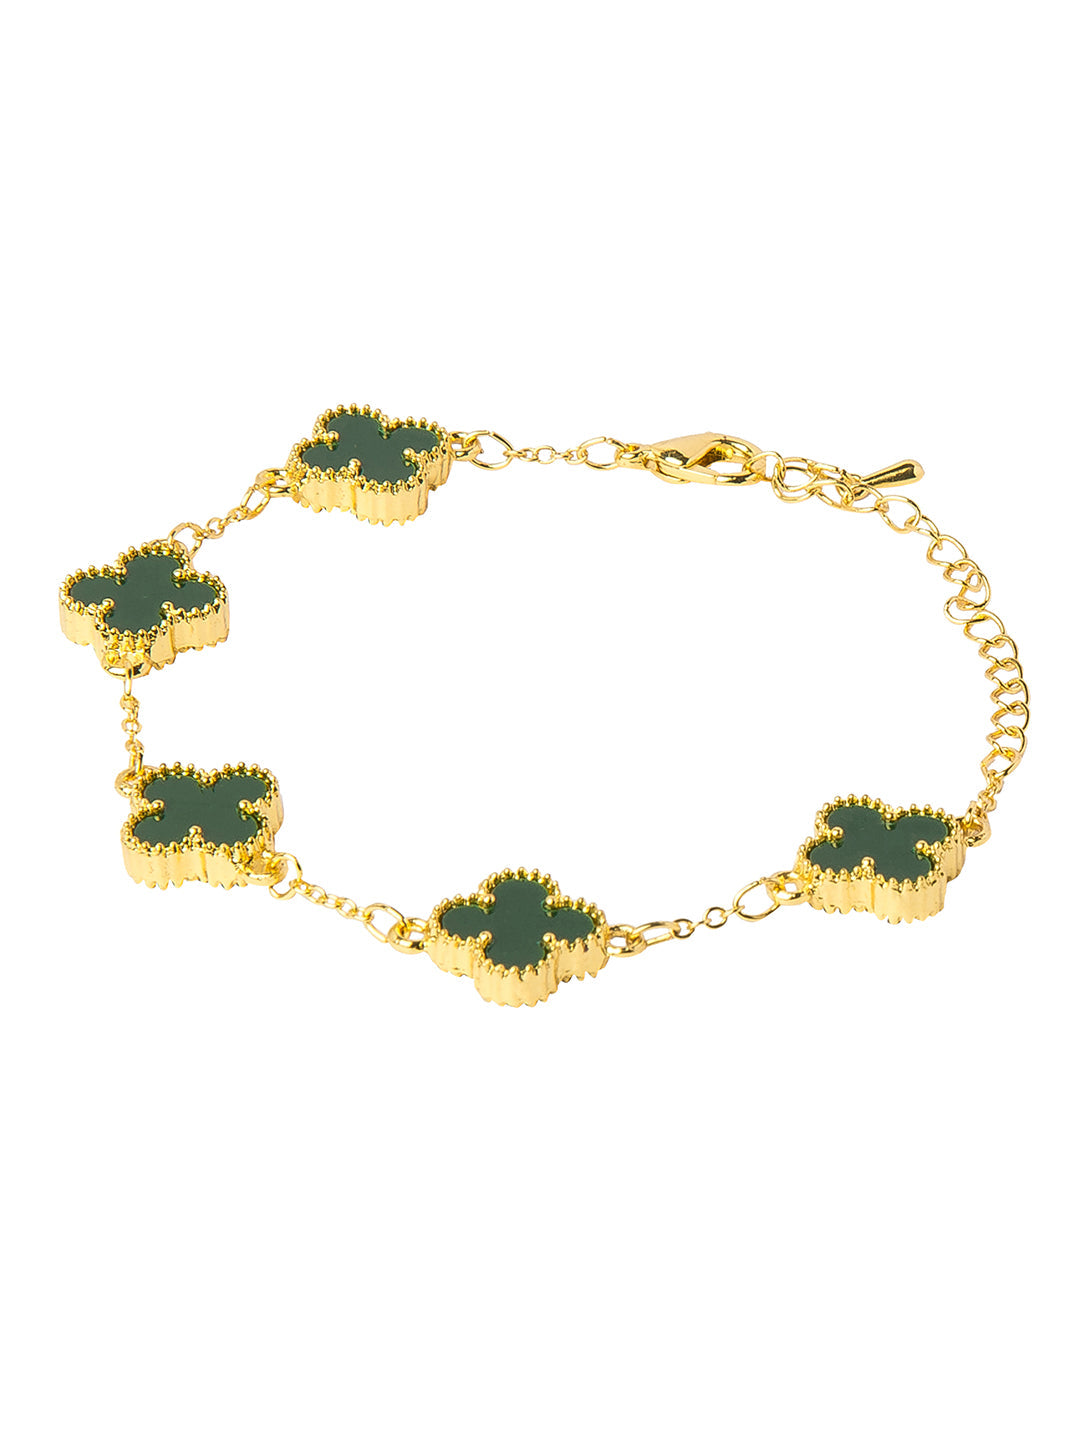 Gold Plated American Diamond Designer Flower Clover Bracelet For Girls, Teens & Women